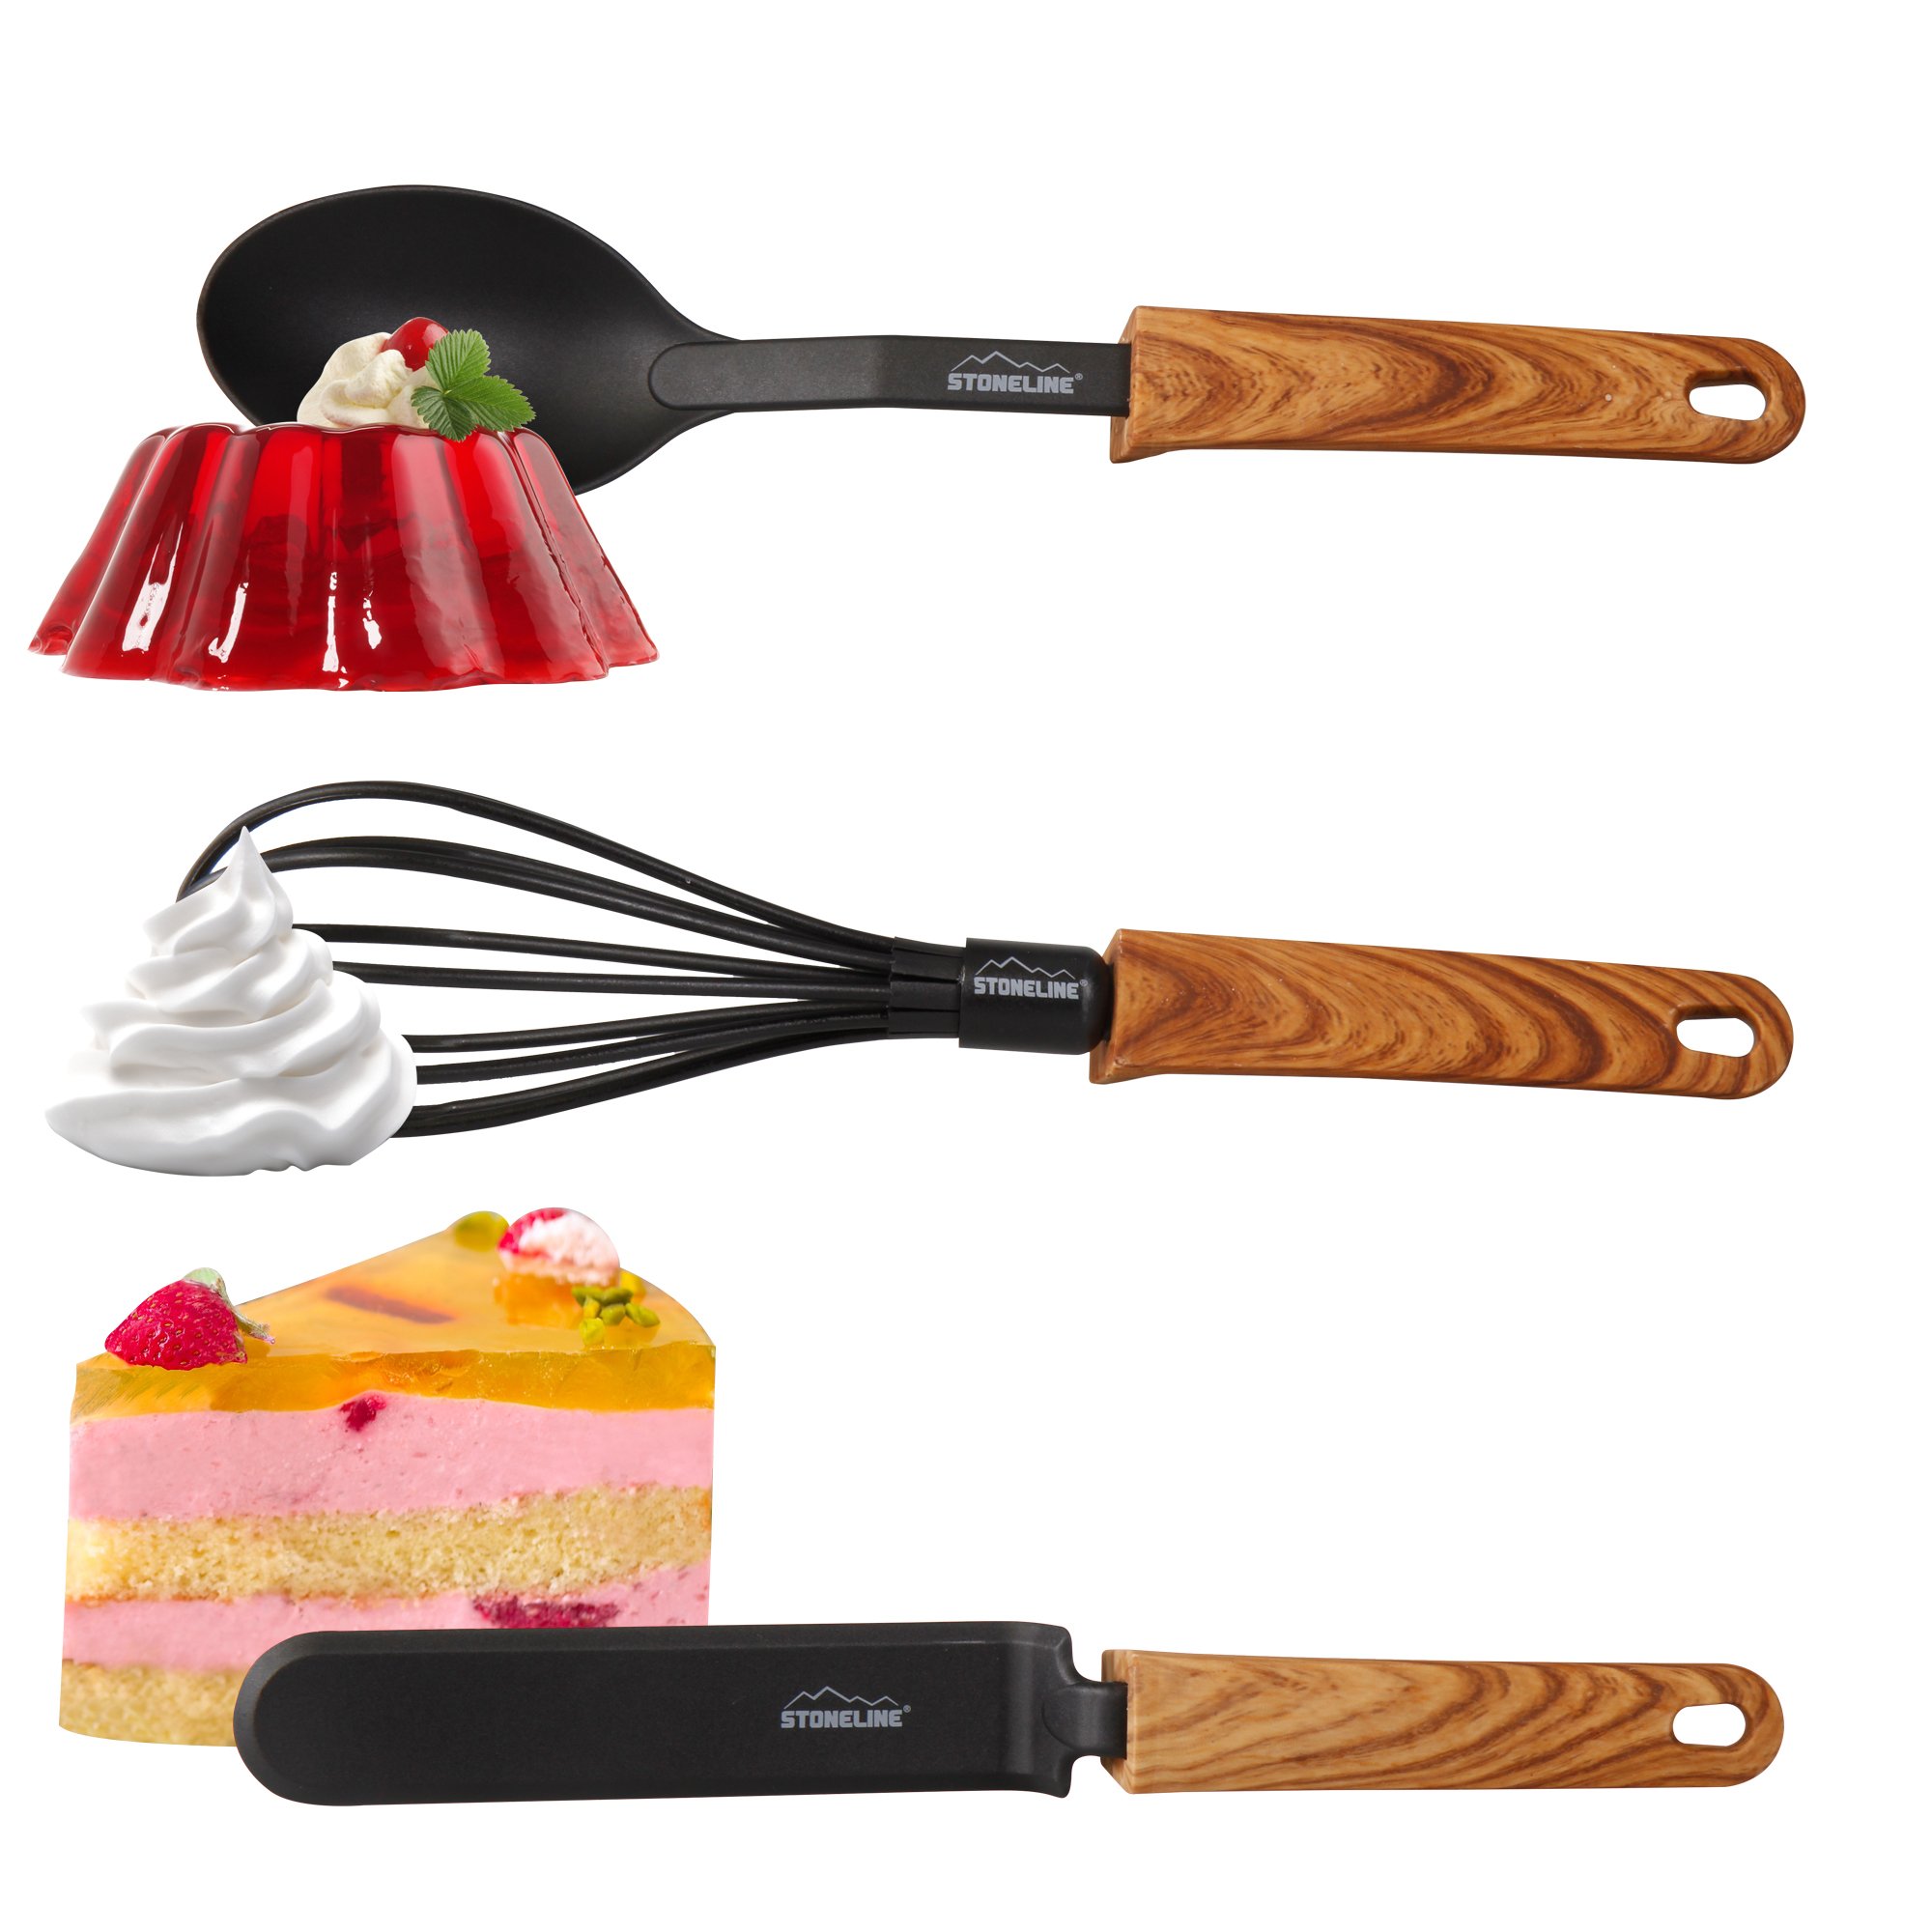 STONELINE® Back to Nature Set de utensilios de cocina de 9 piezas, con práctico soporte, para utensilios antiadherentes